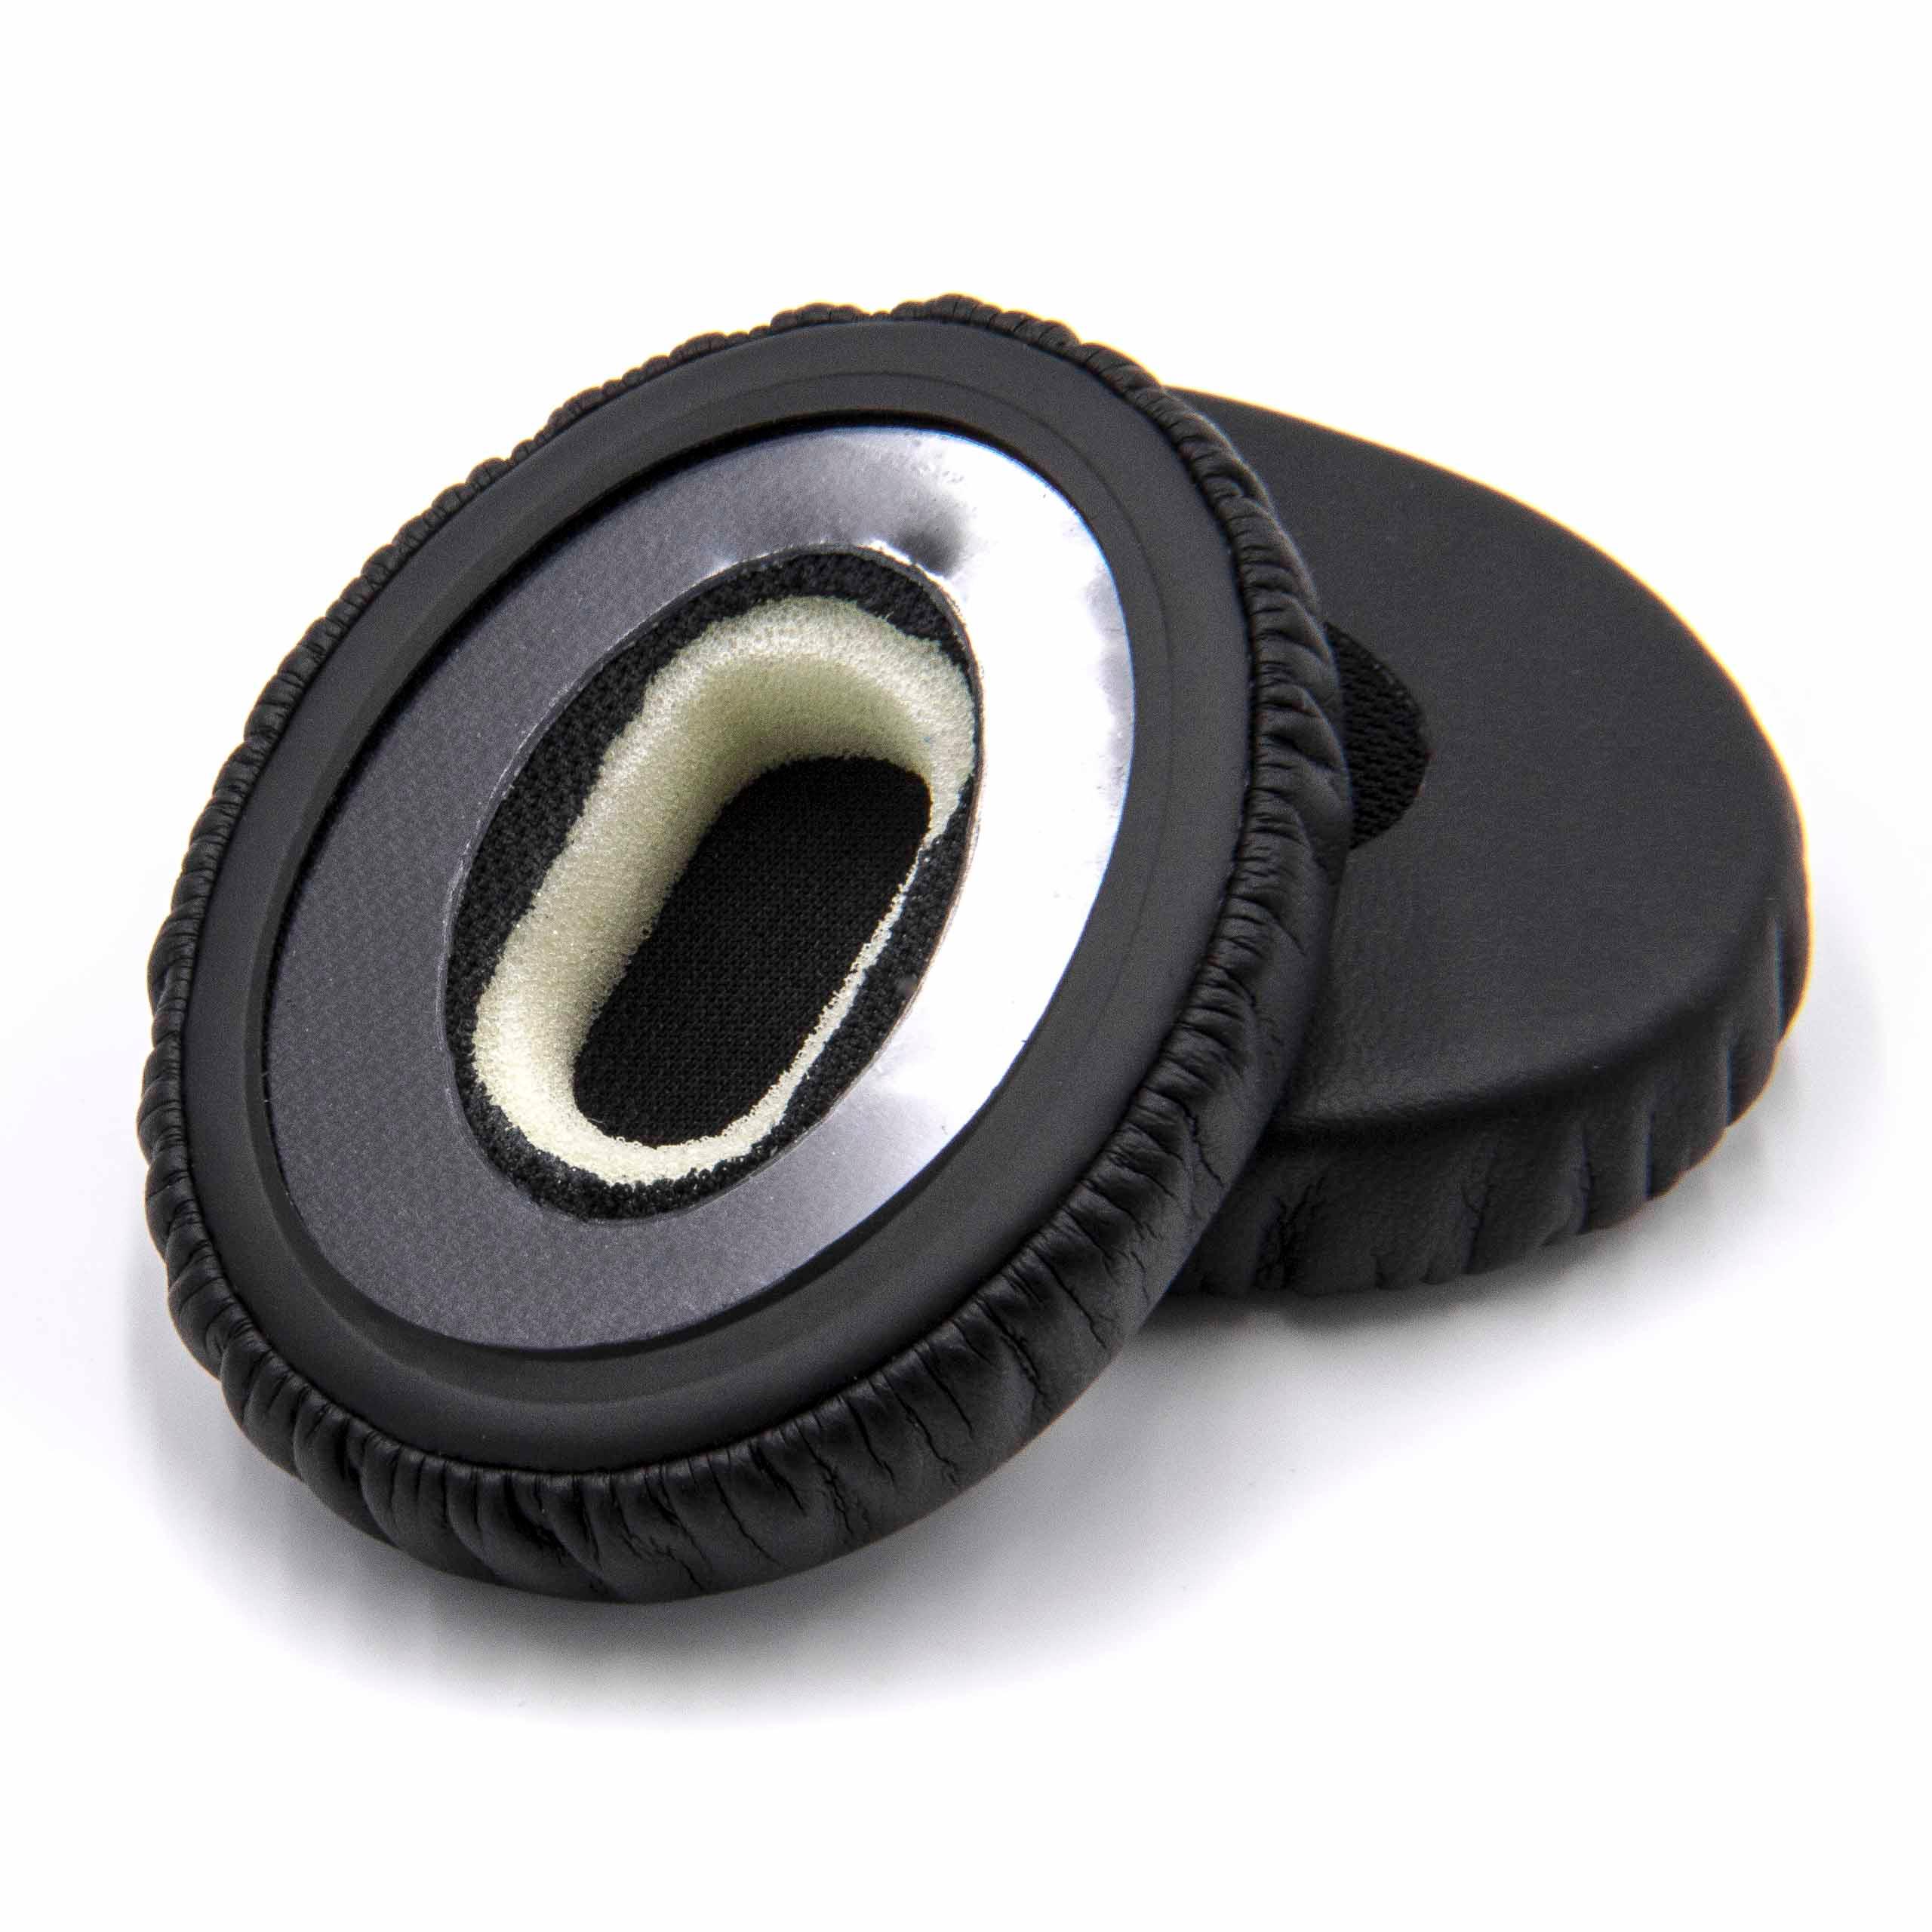 2x 1 paio di cuscinetti per Bose OnEar cuffie ecc. - fibra sintetica, 5,6 cm diametro esterno, nero